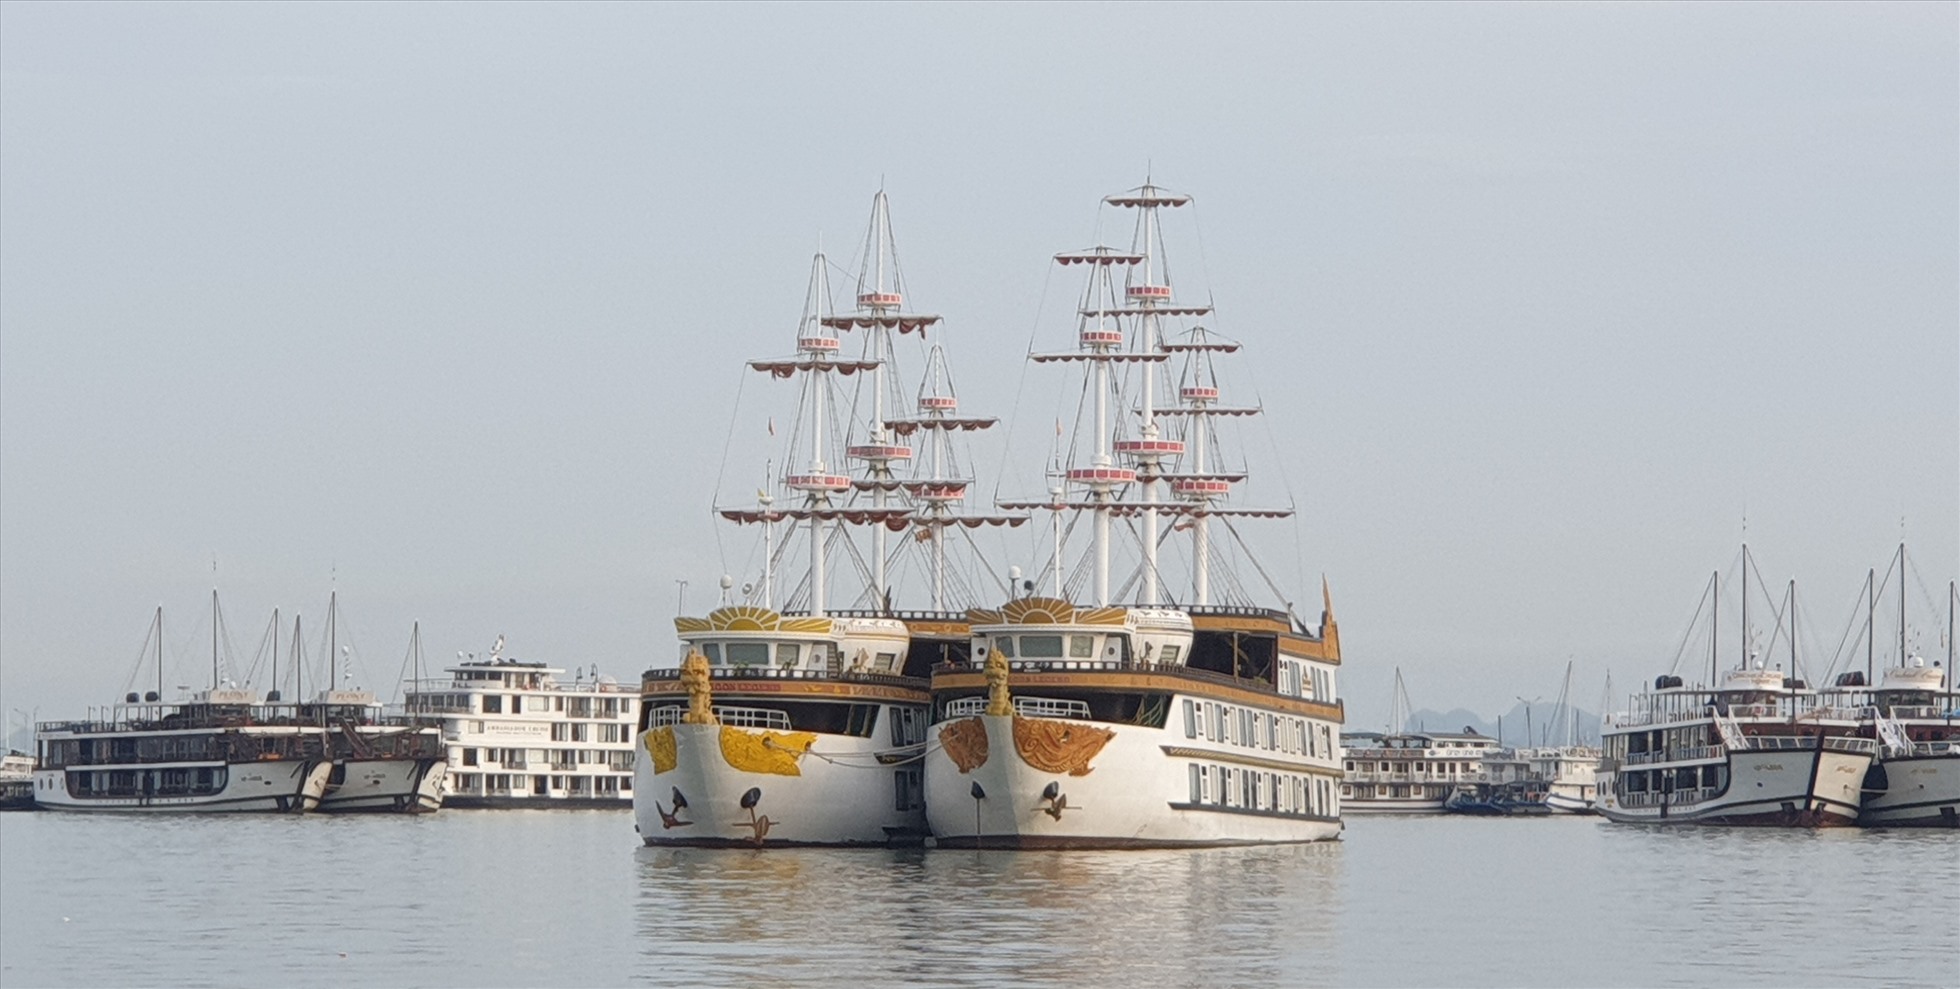 Đội tàu du lịch trên vịnh Hạ Long ngày càng hiện đại và đẹp. Ảnh: Nguyễn Hùng